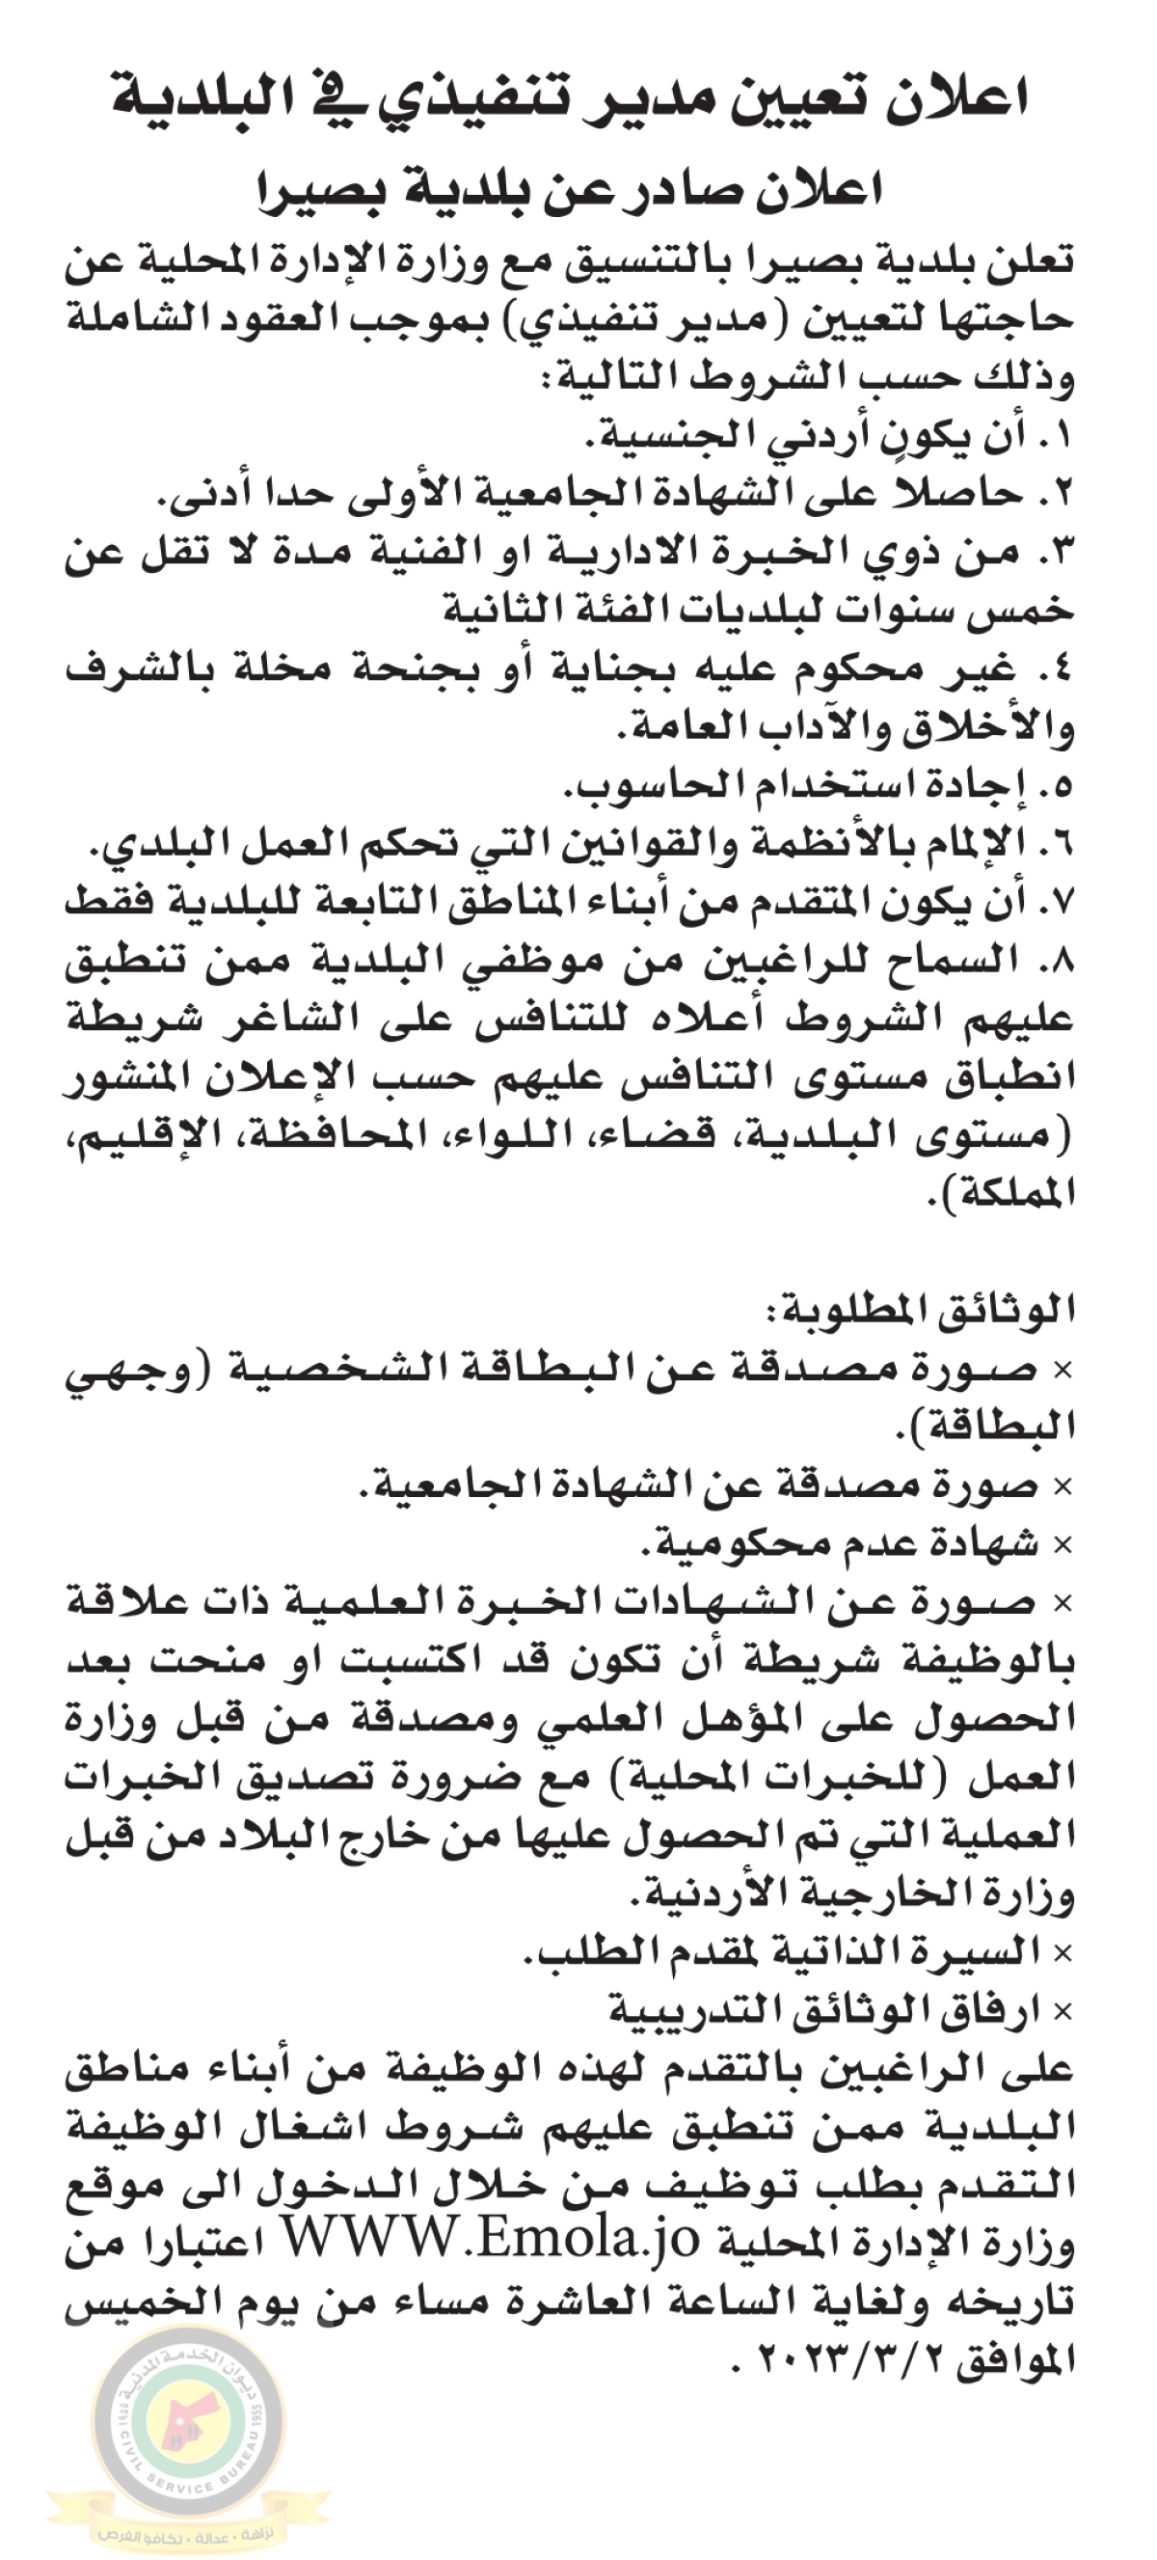 اعلان وظائف شاغرة مدير تنفيذي بموجب عقد شامل صادرعن بلدية بصيرا